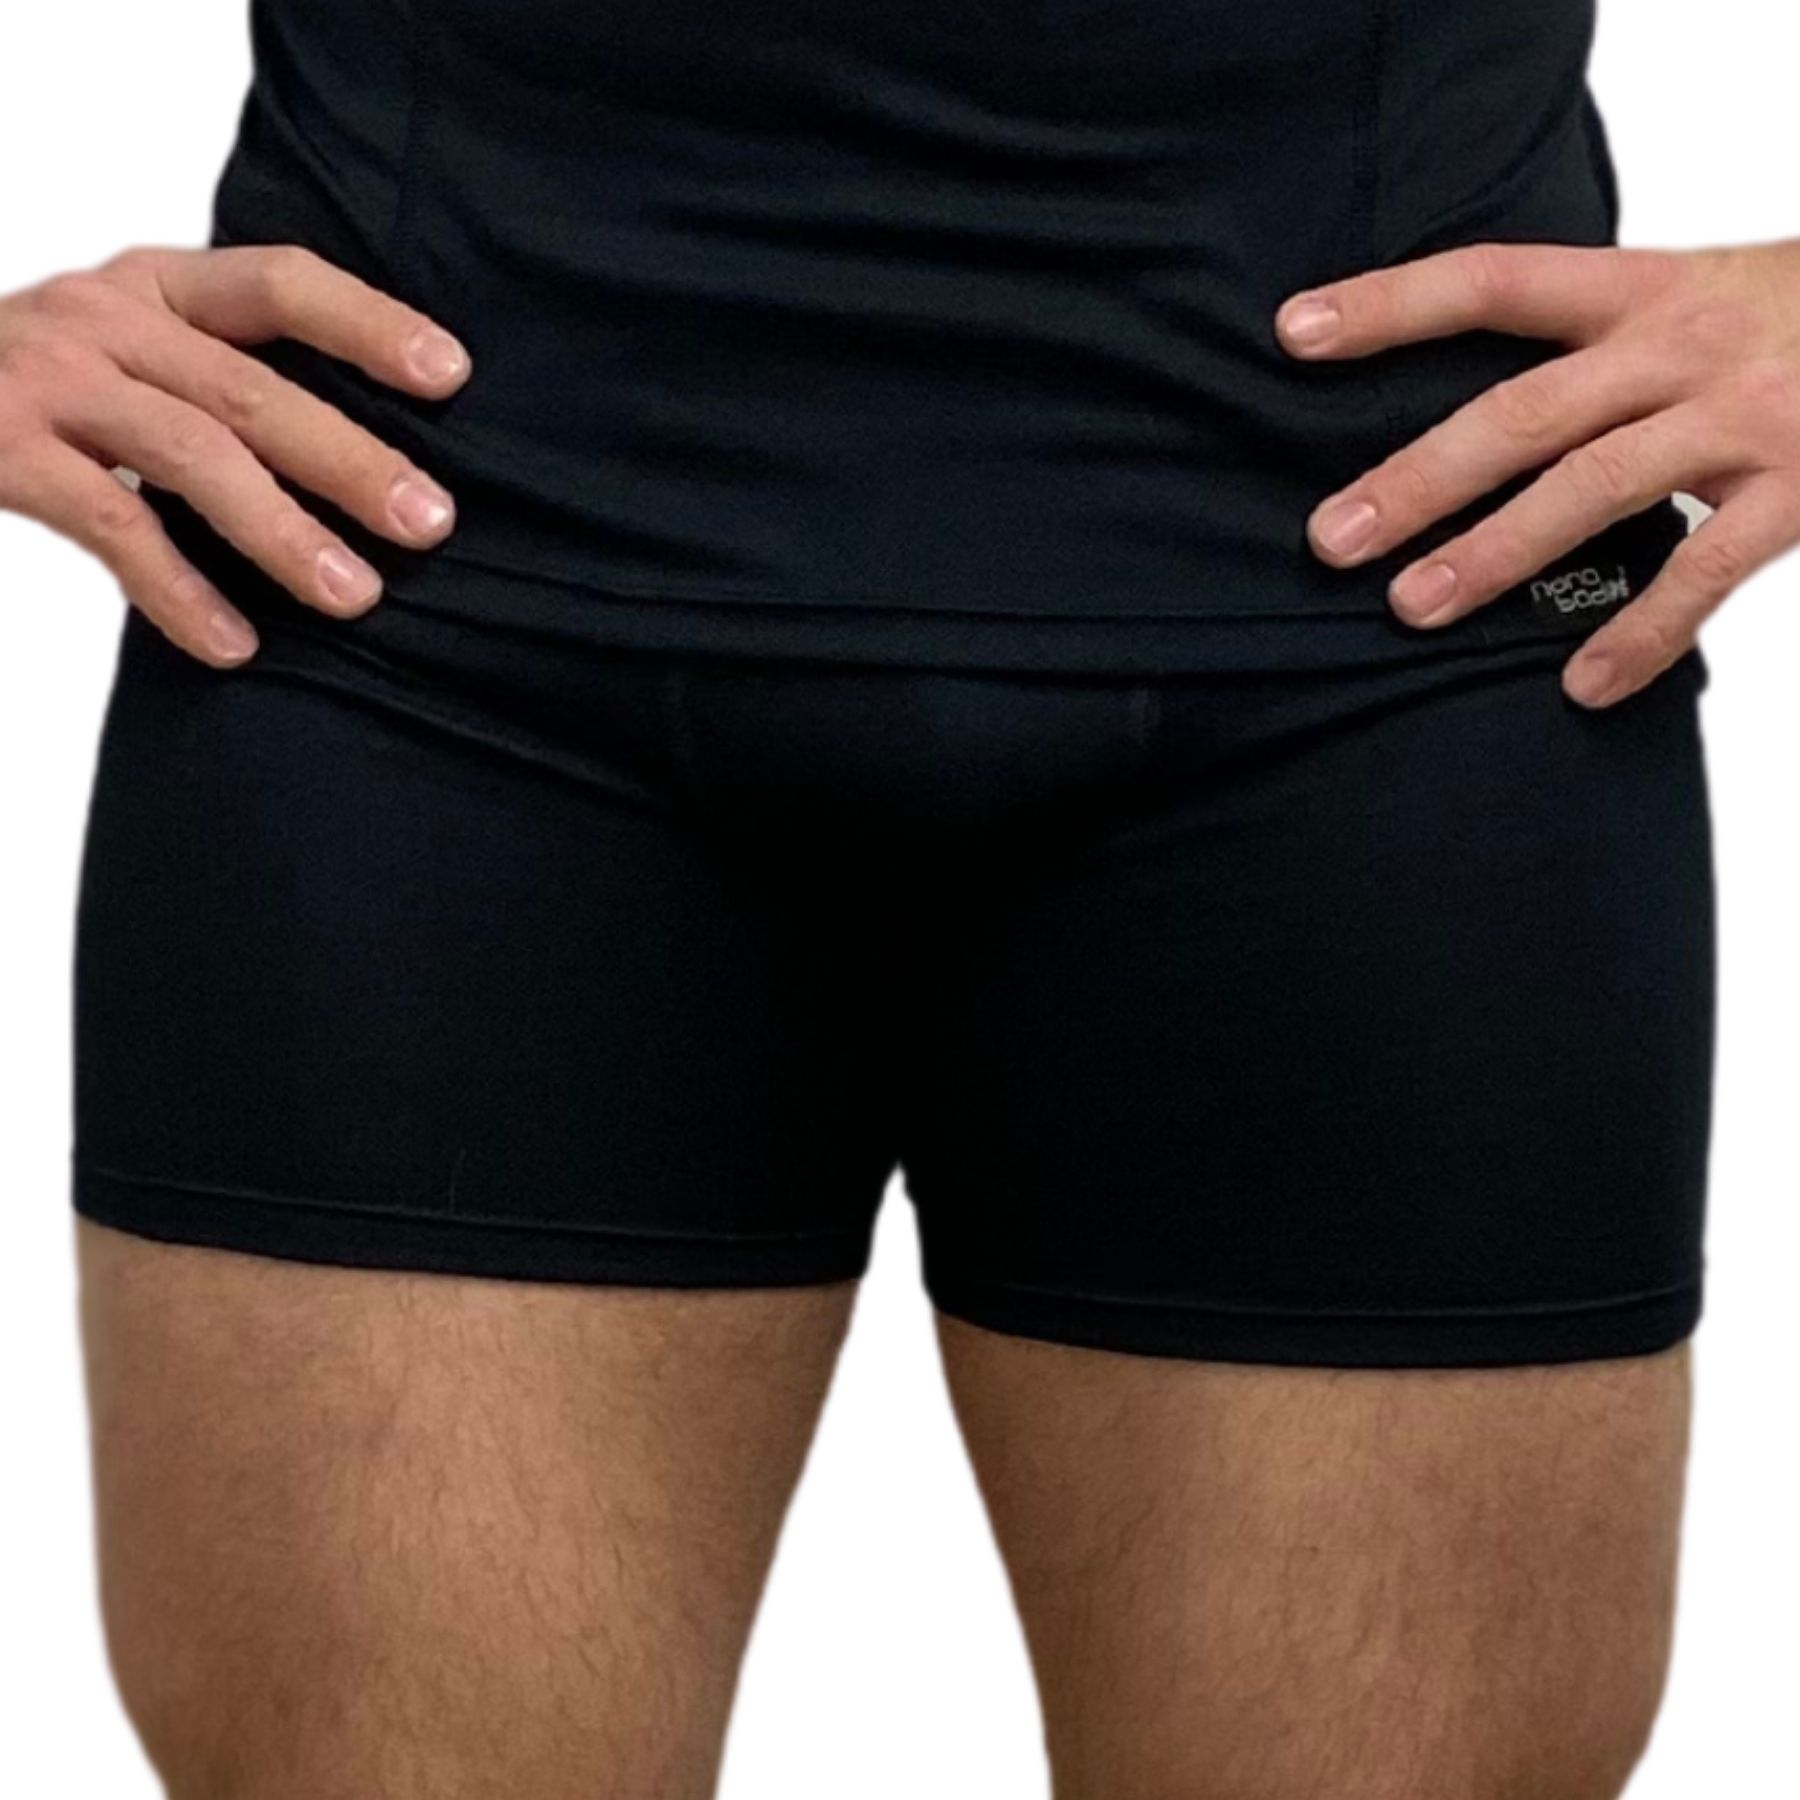 SPORT NANO shorts .men - agtive® nanoshop